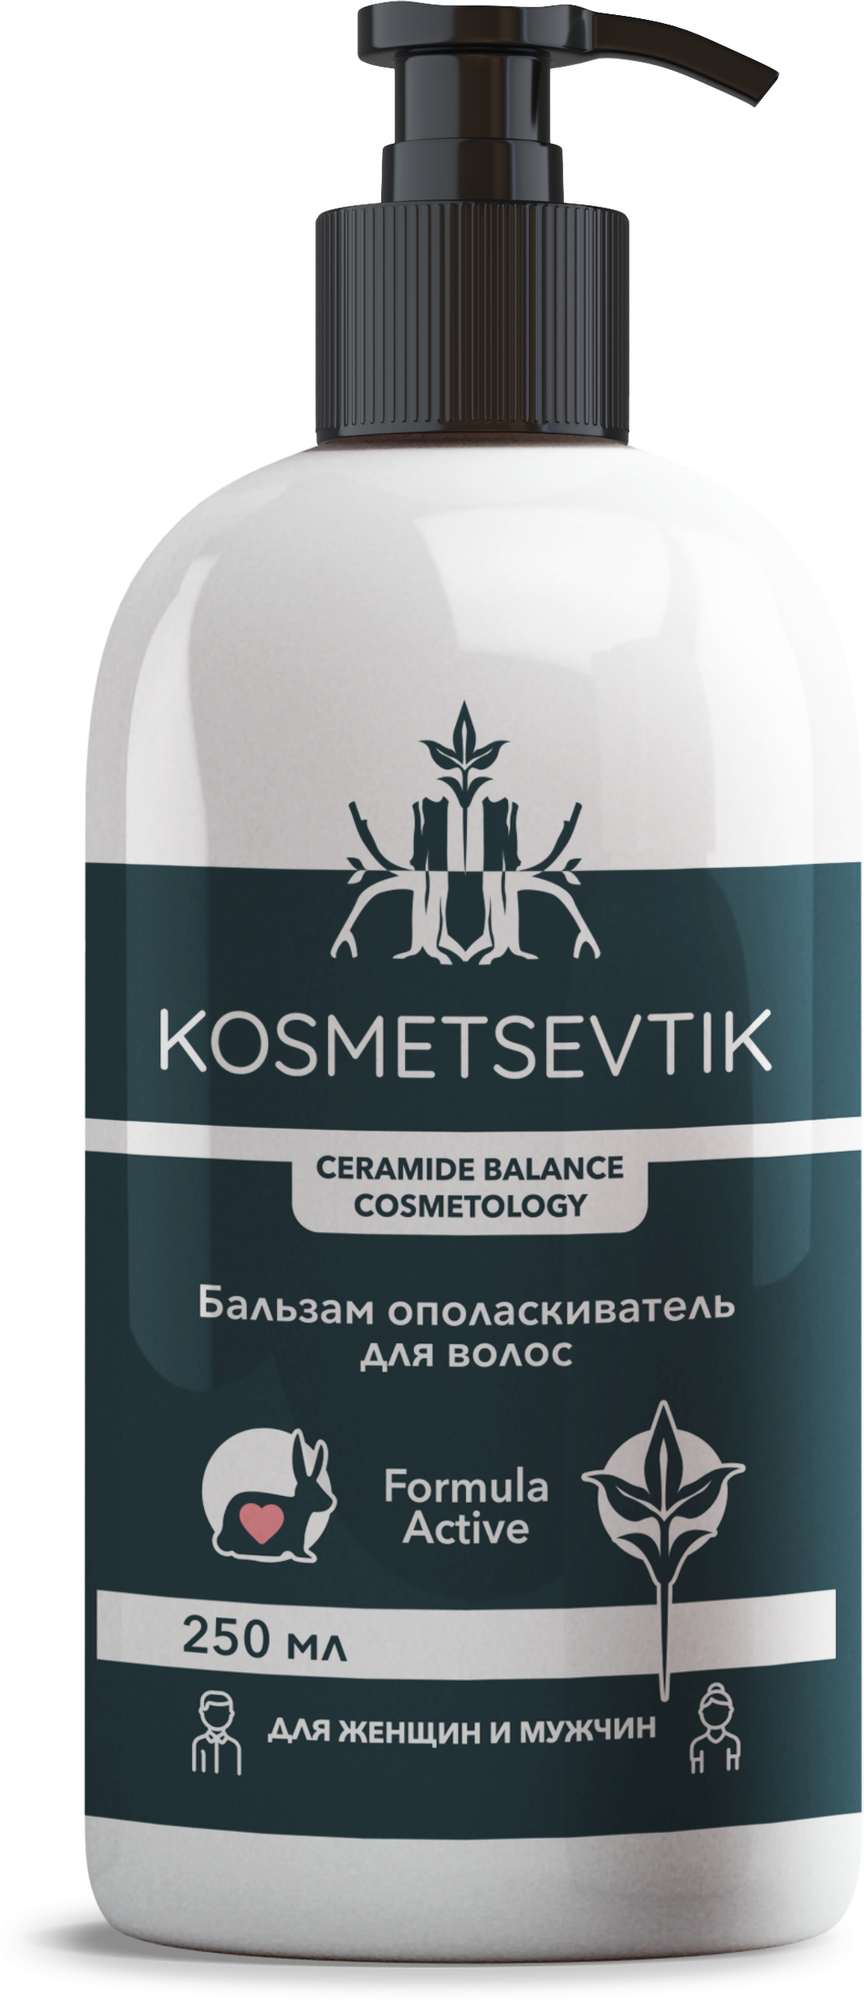 Kosmetsevtik / Бальзам ополаскиватель для волос с дозатором, 250 мл, для женщин и мужчин